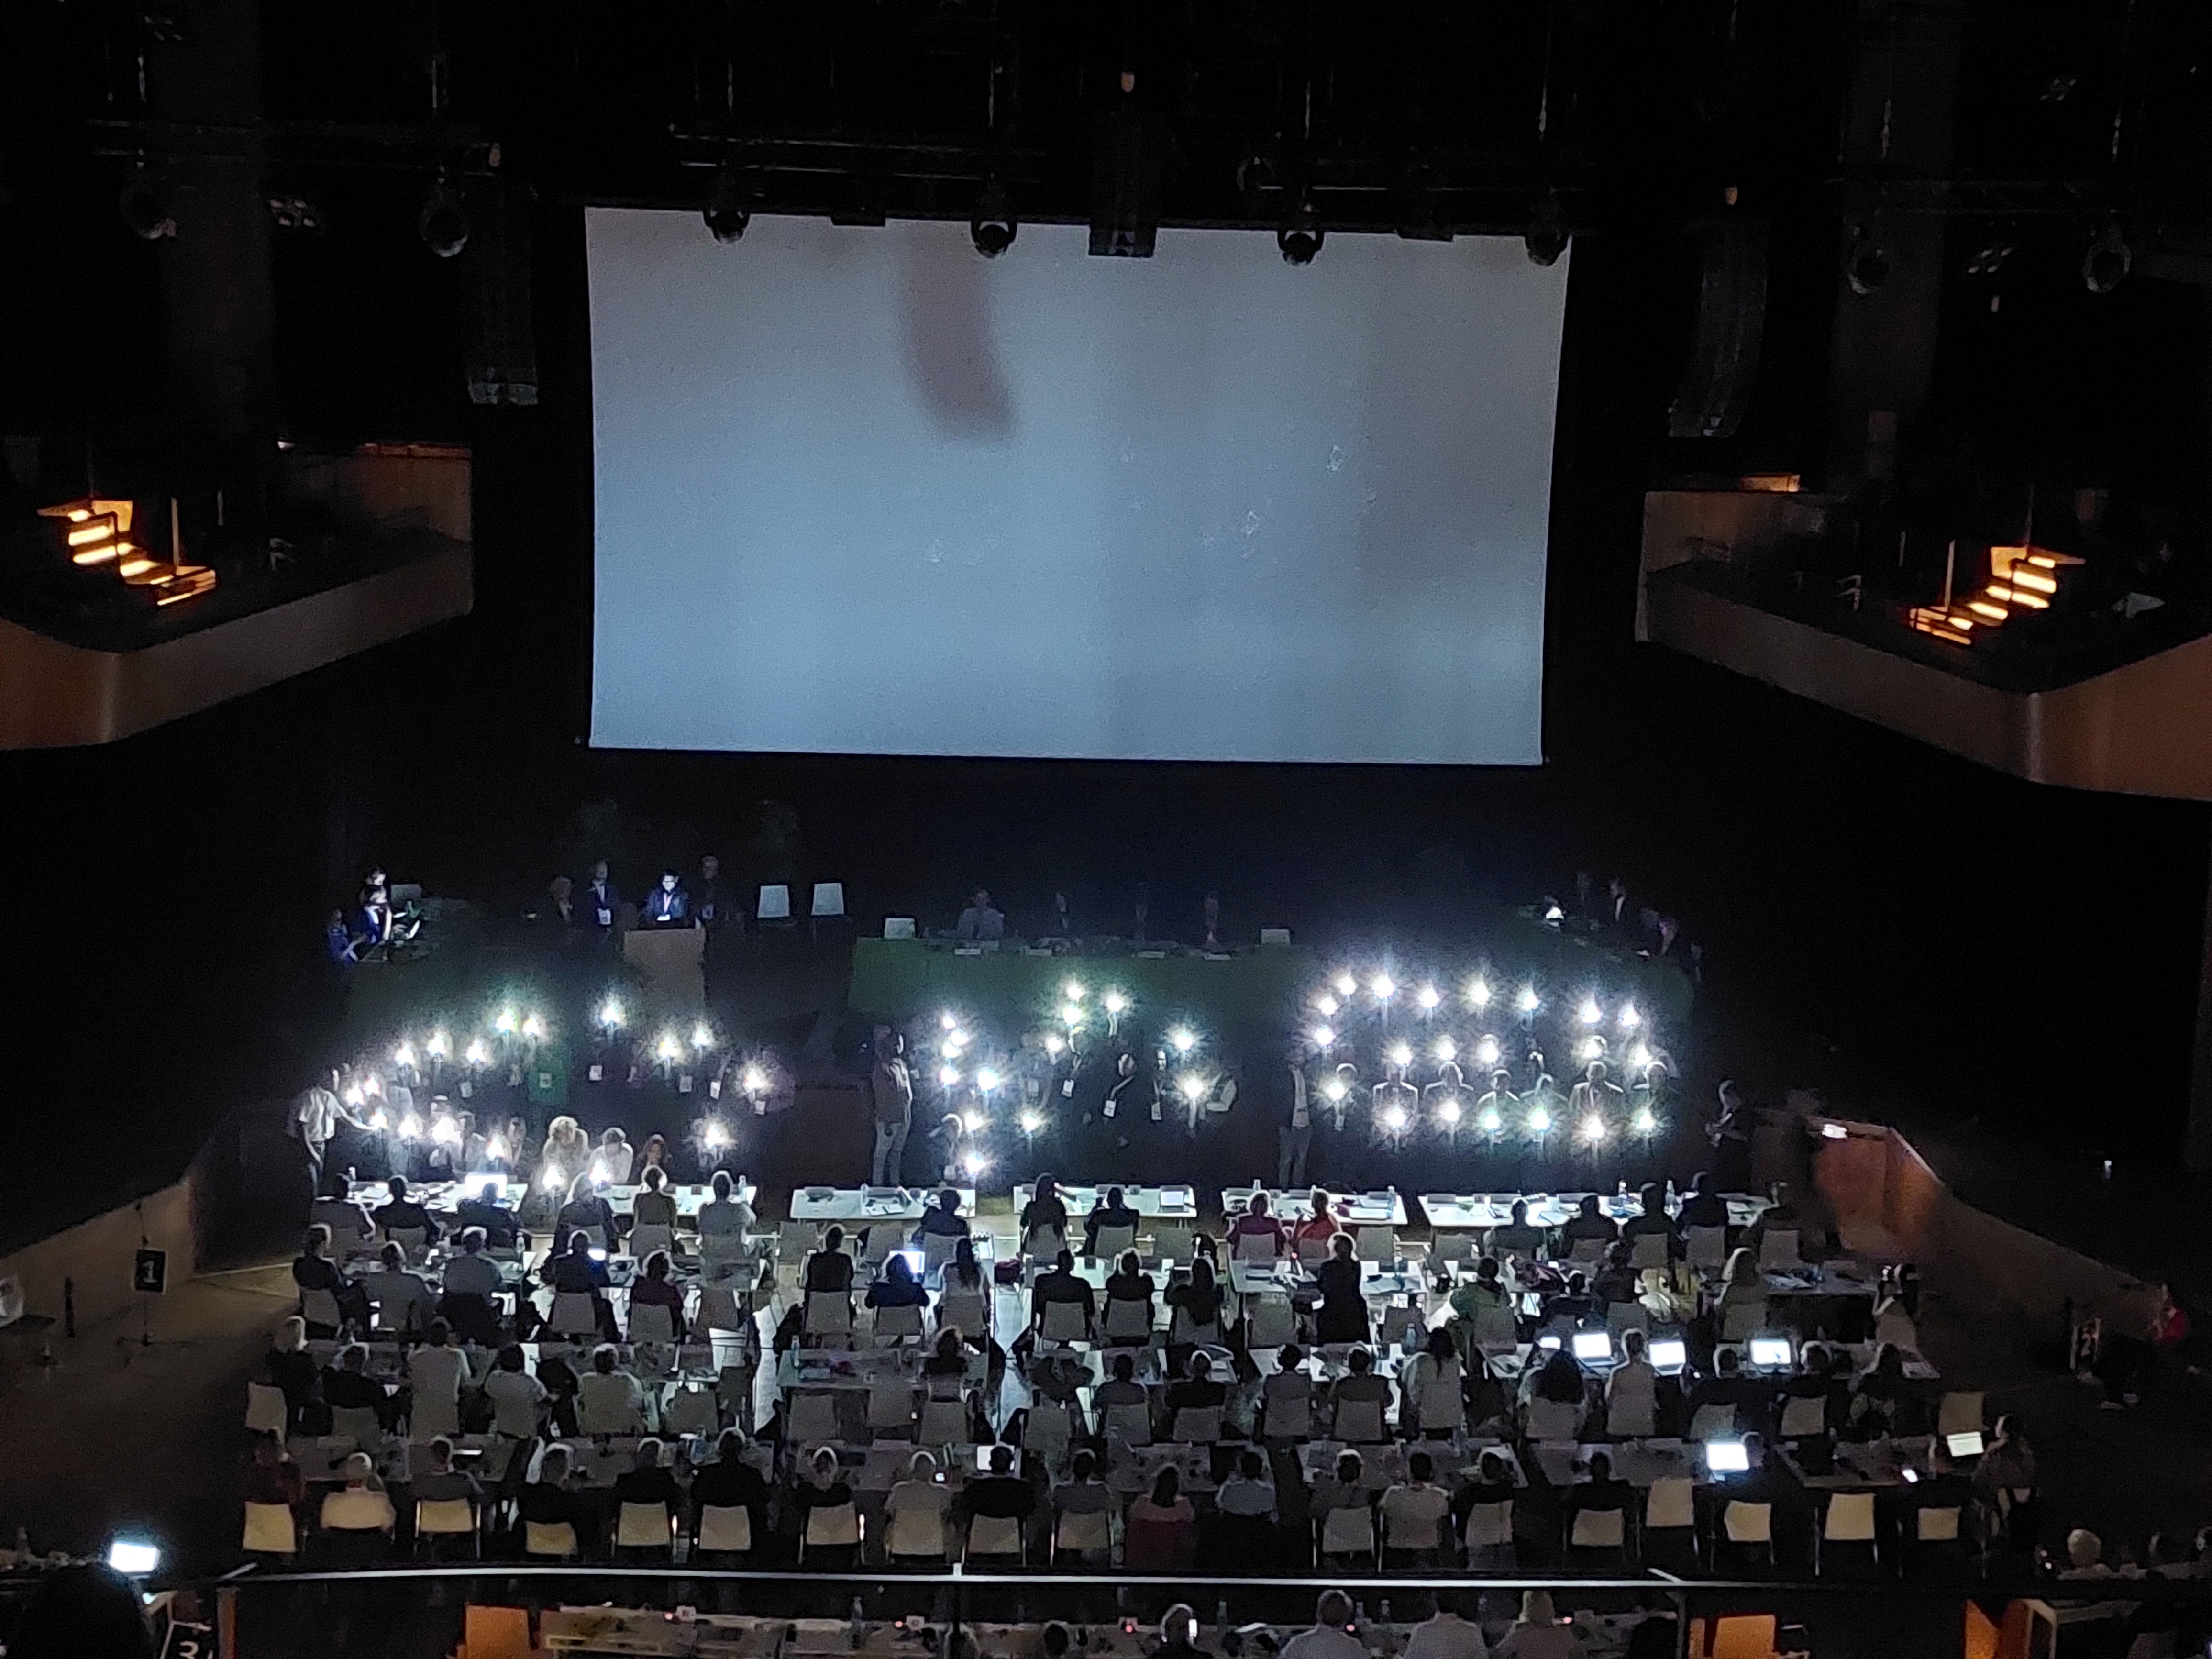 Taschenlampen formieren das Wort "One" auf der Bühne der LWB-Vollversammung